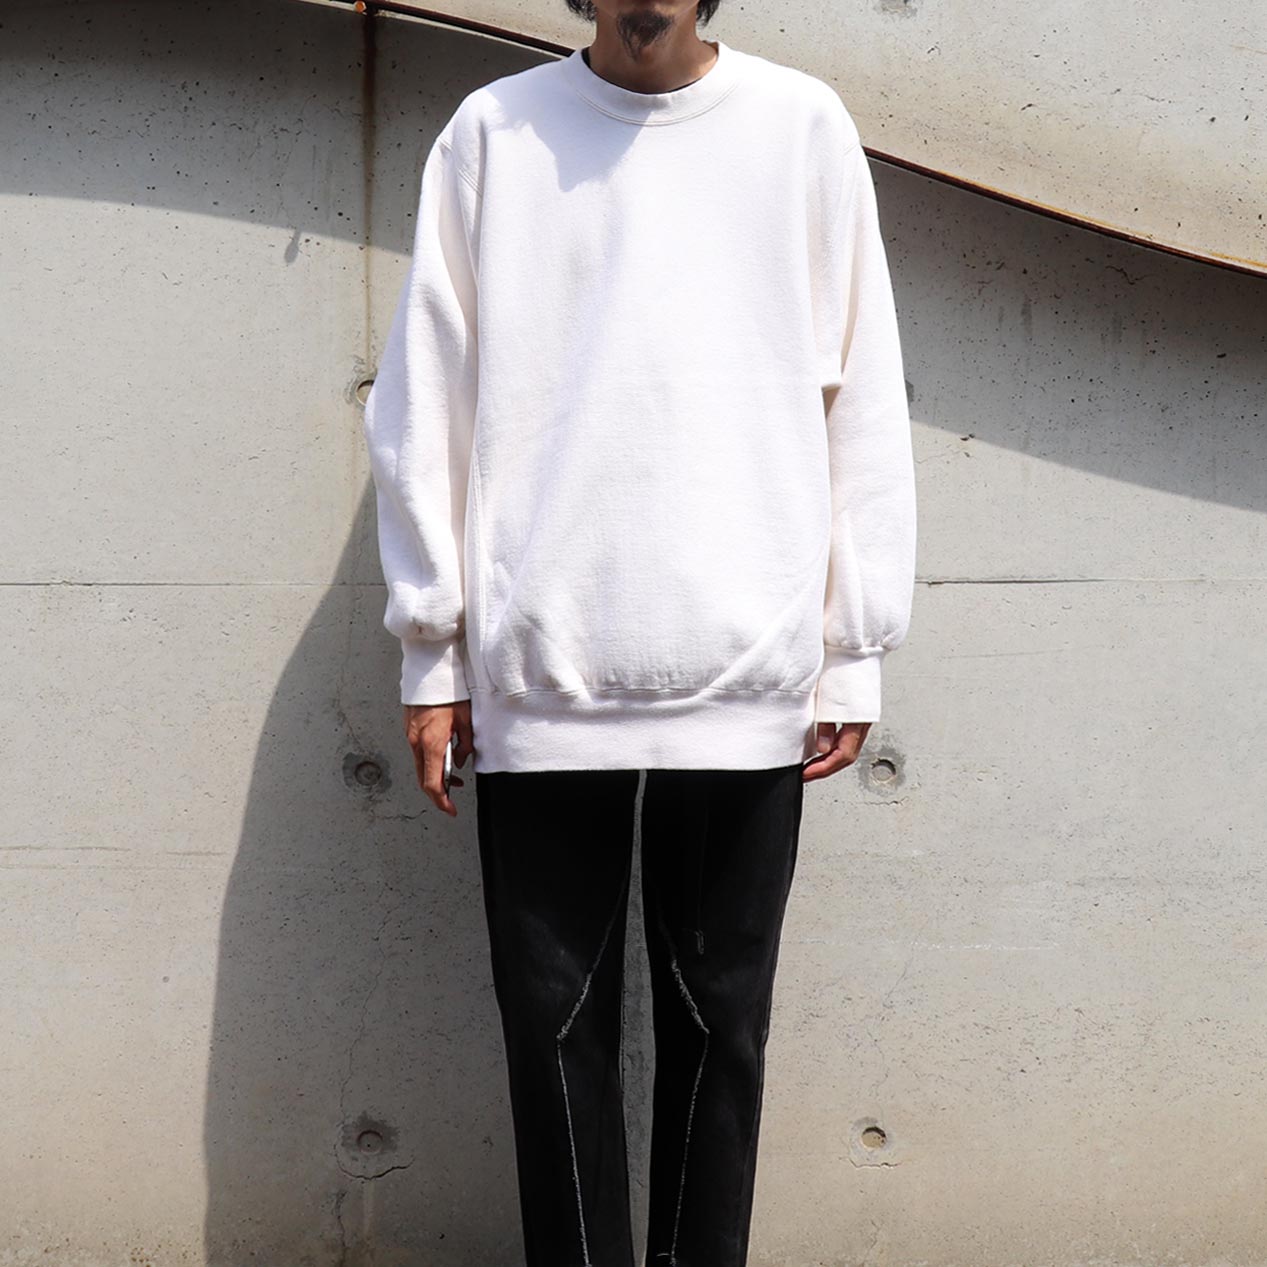 POST JUNK / 90's PLUMA Reverse Weave Style Blank Sweatshirt Made 